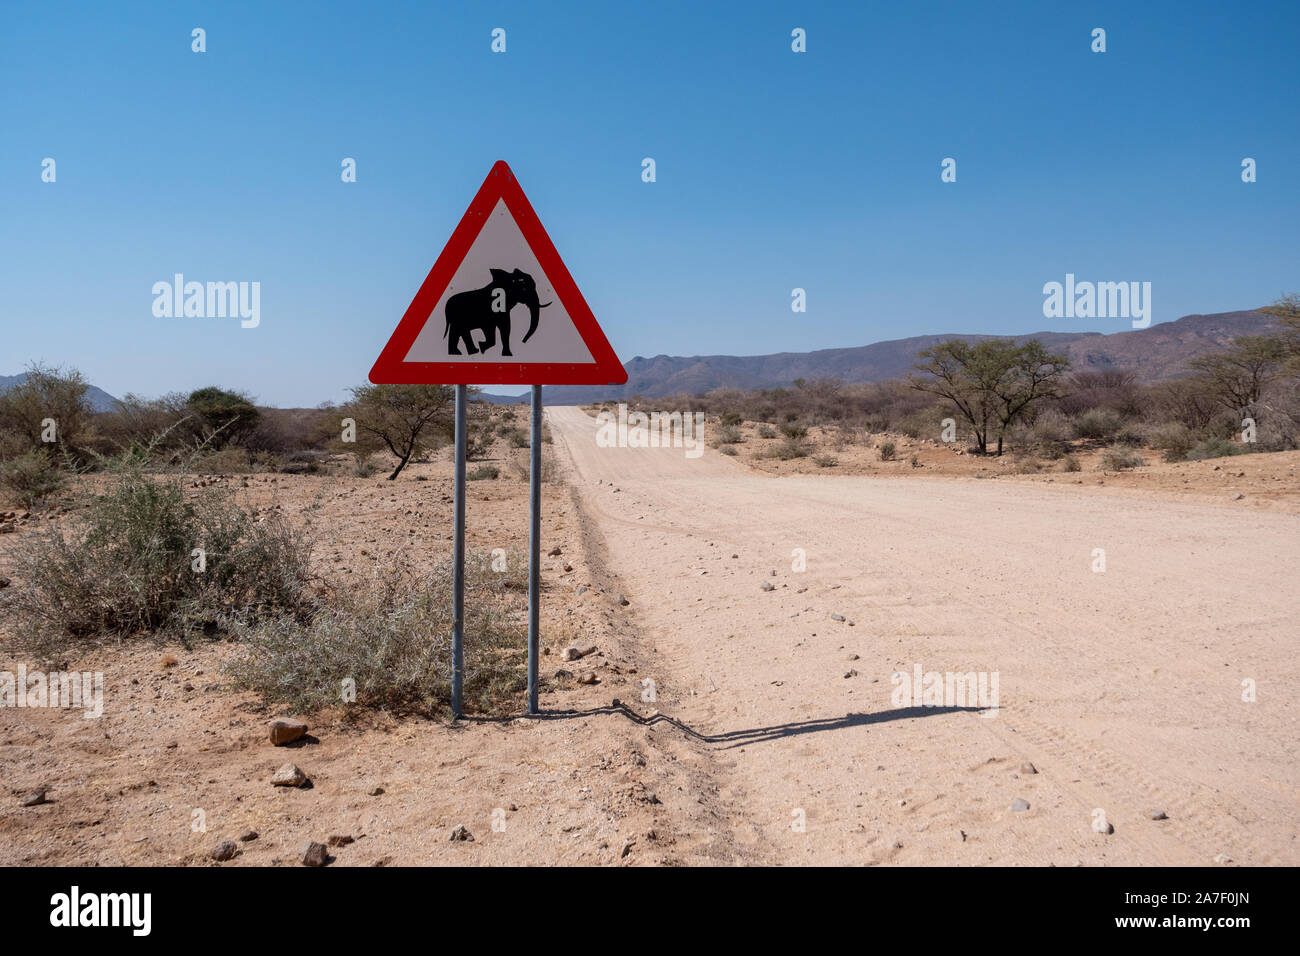 Señal de advertencia de carretera Cruce de elefantes en Namibia, de forma triangular, el peligro de colisiones Animal atención firmar Foto de stock